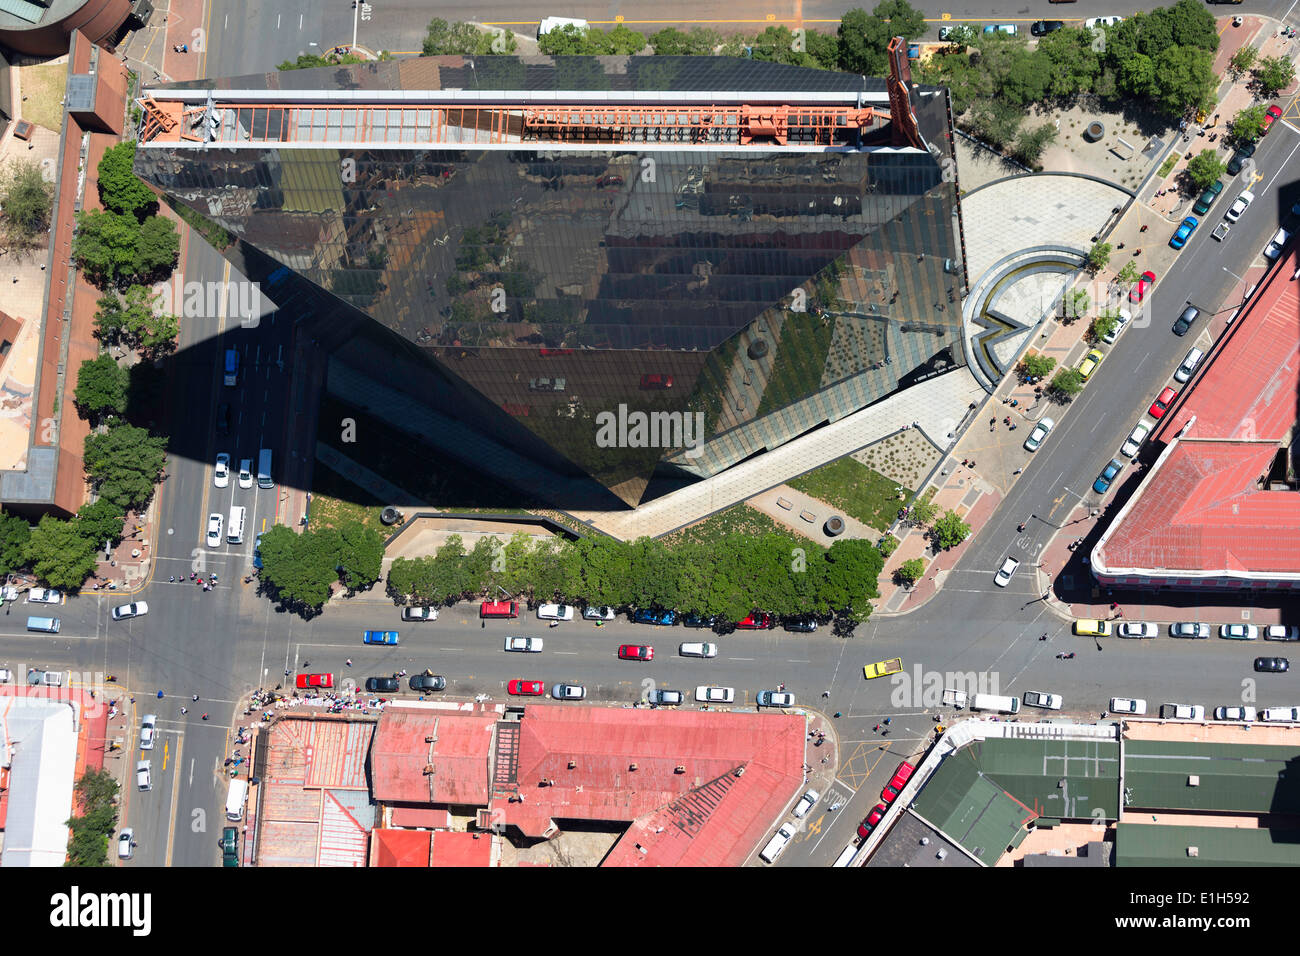 Vista aerea del 11 Diagonal street, un iconico edificio alto, il quartiere centrale degli affari di Johannesburg, Sud Africa Foto Stock